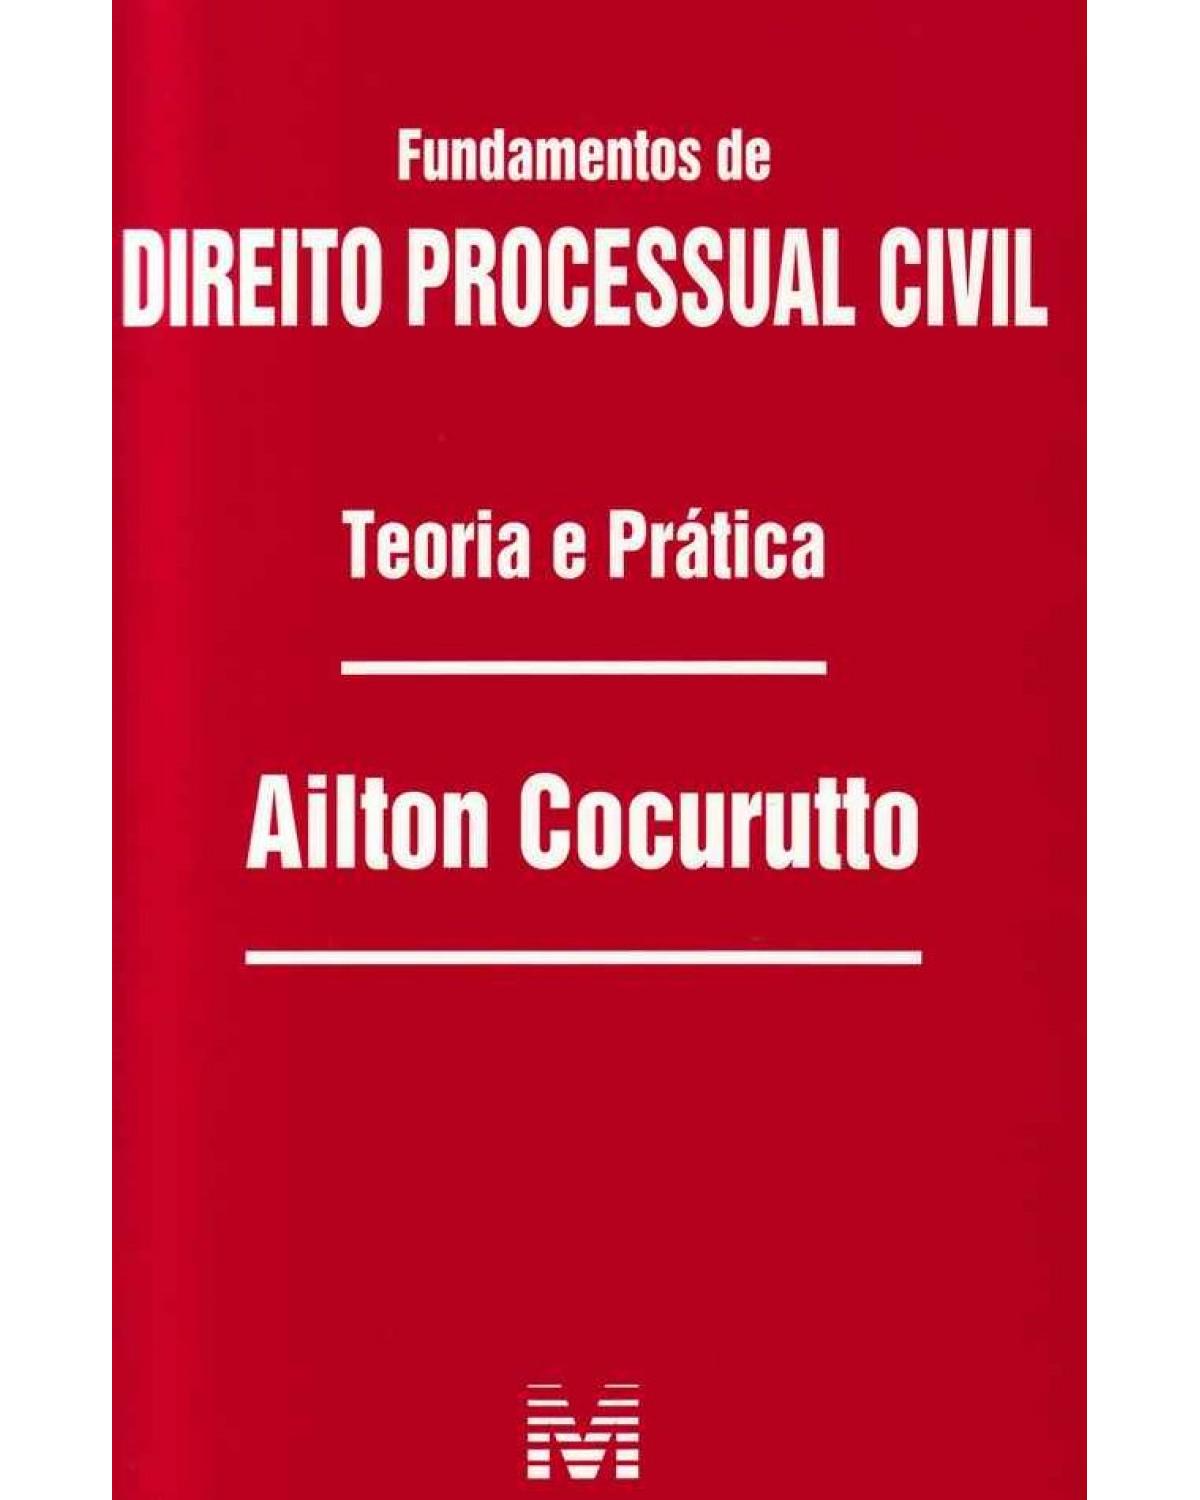 Fundamentos de direito processual civil: Teoria e prática - 1ª Edição